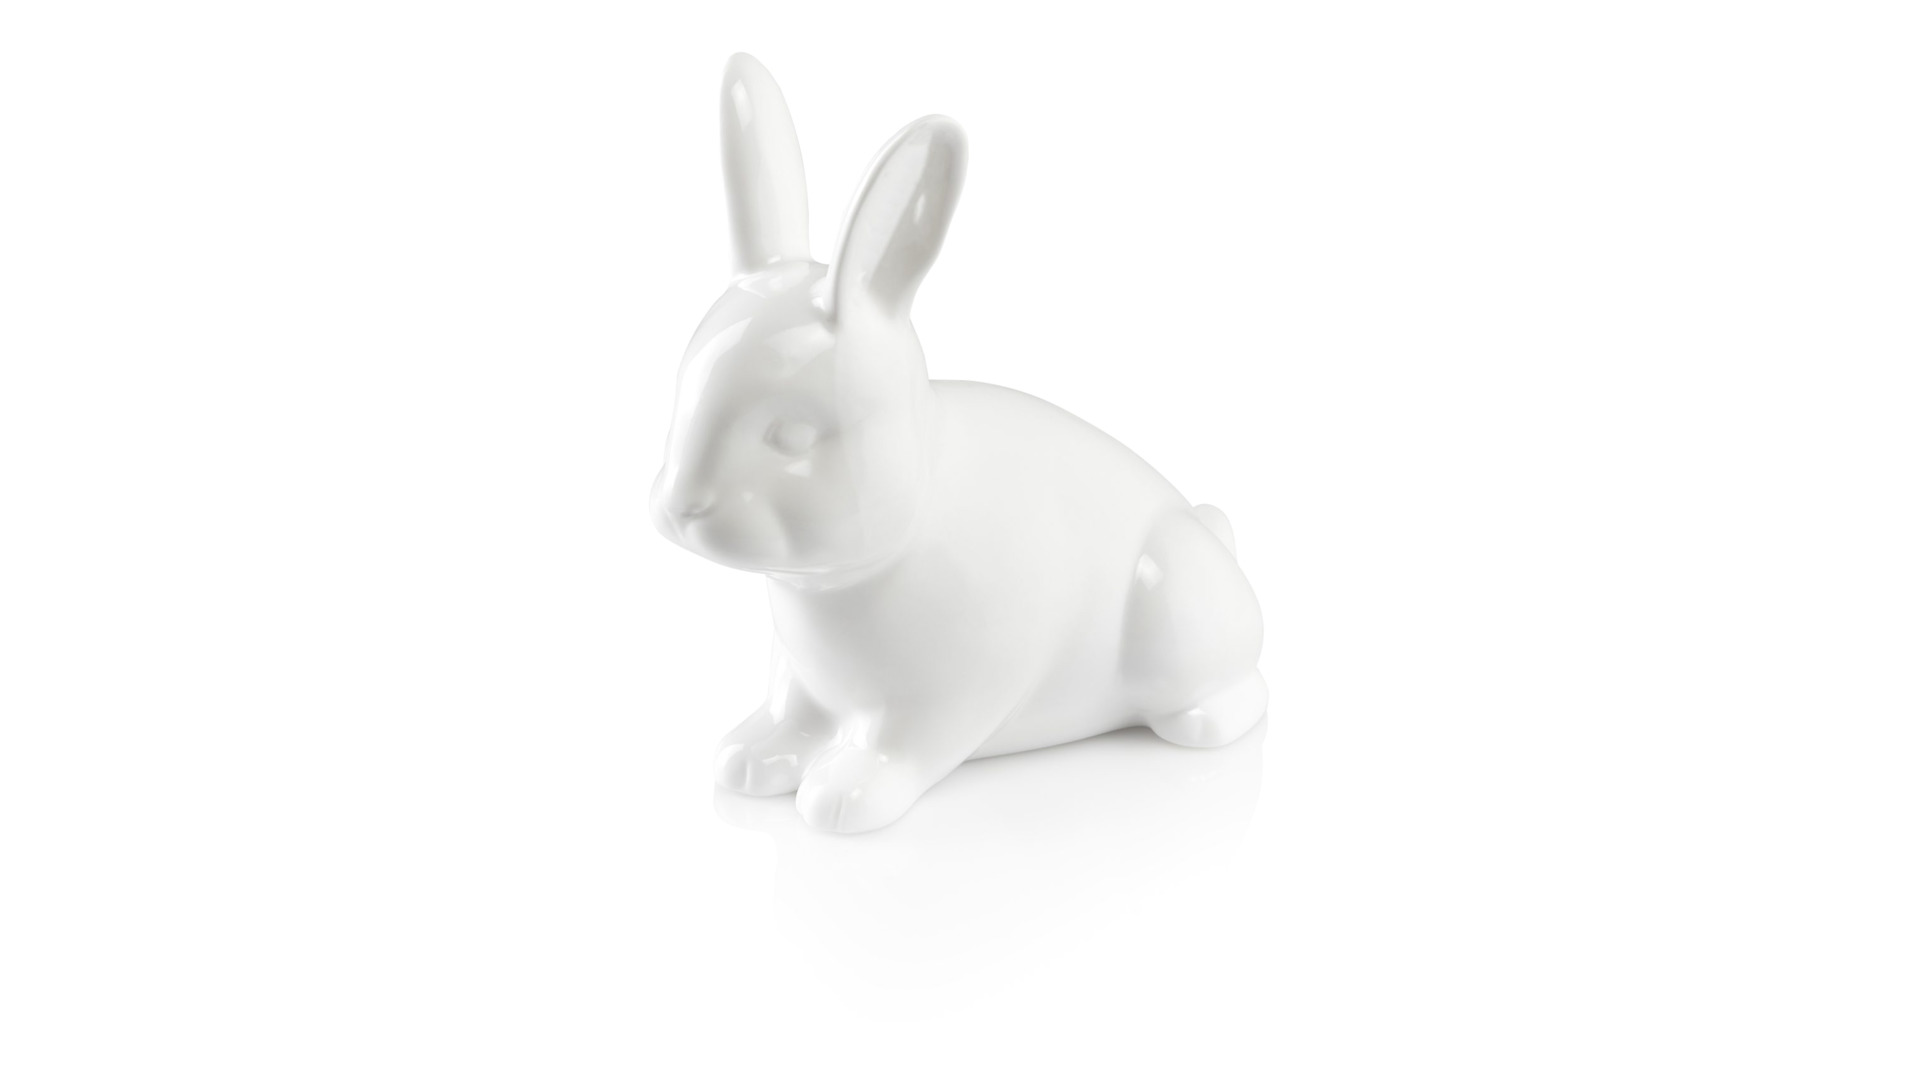 Статуэтка My Ceramic Story Пасхальный Кролик  17 см, фарфор твердый